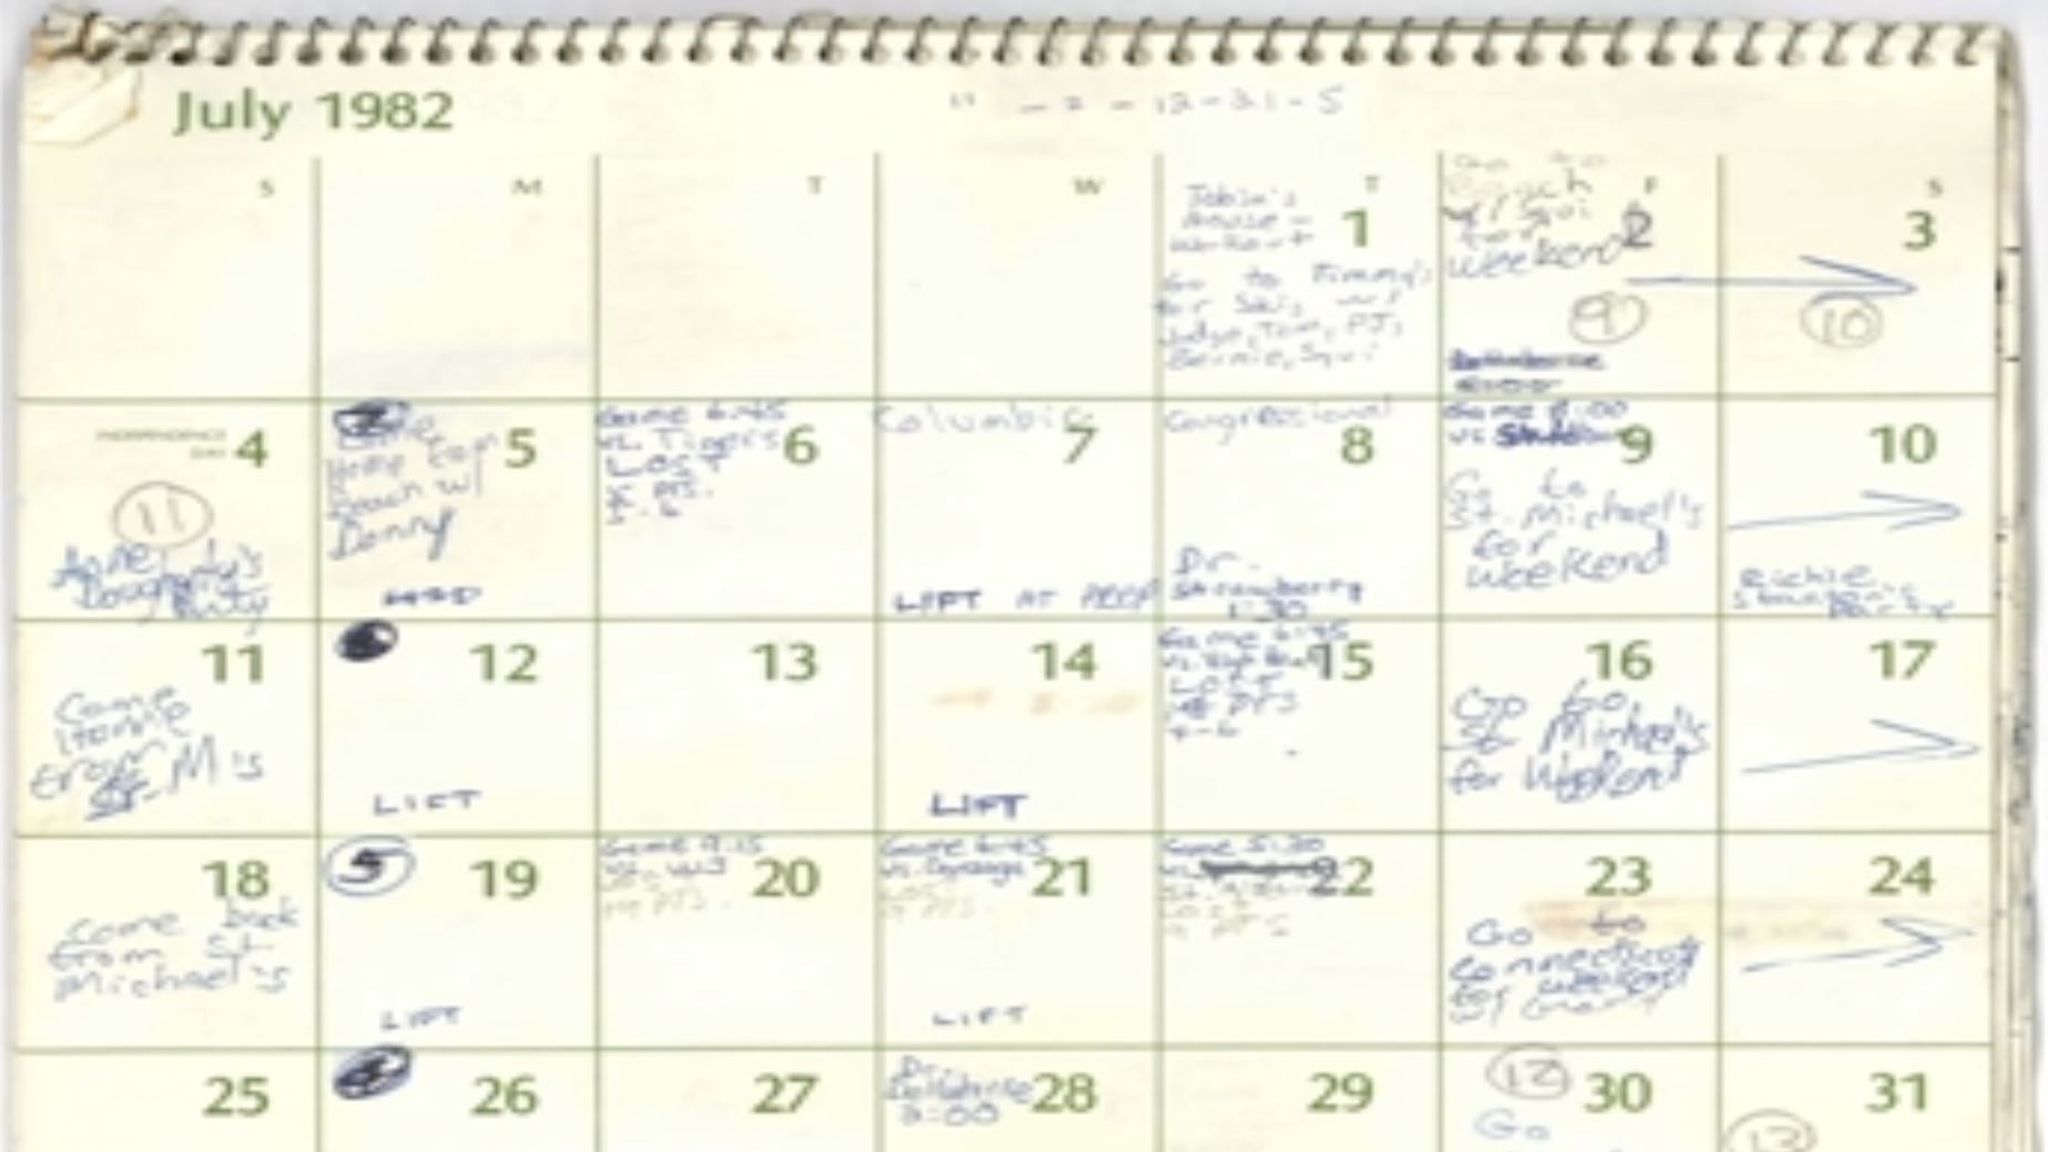 Brett Kavanaugh shares 1982 calendar pages with Senate judiciary